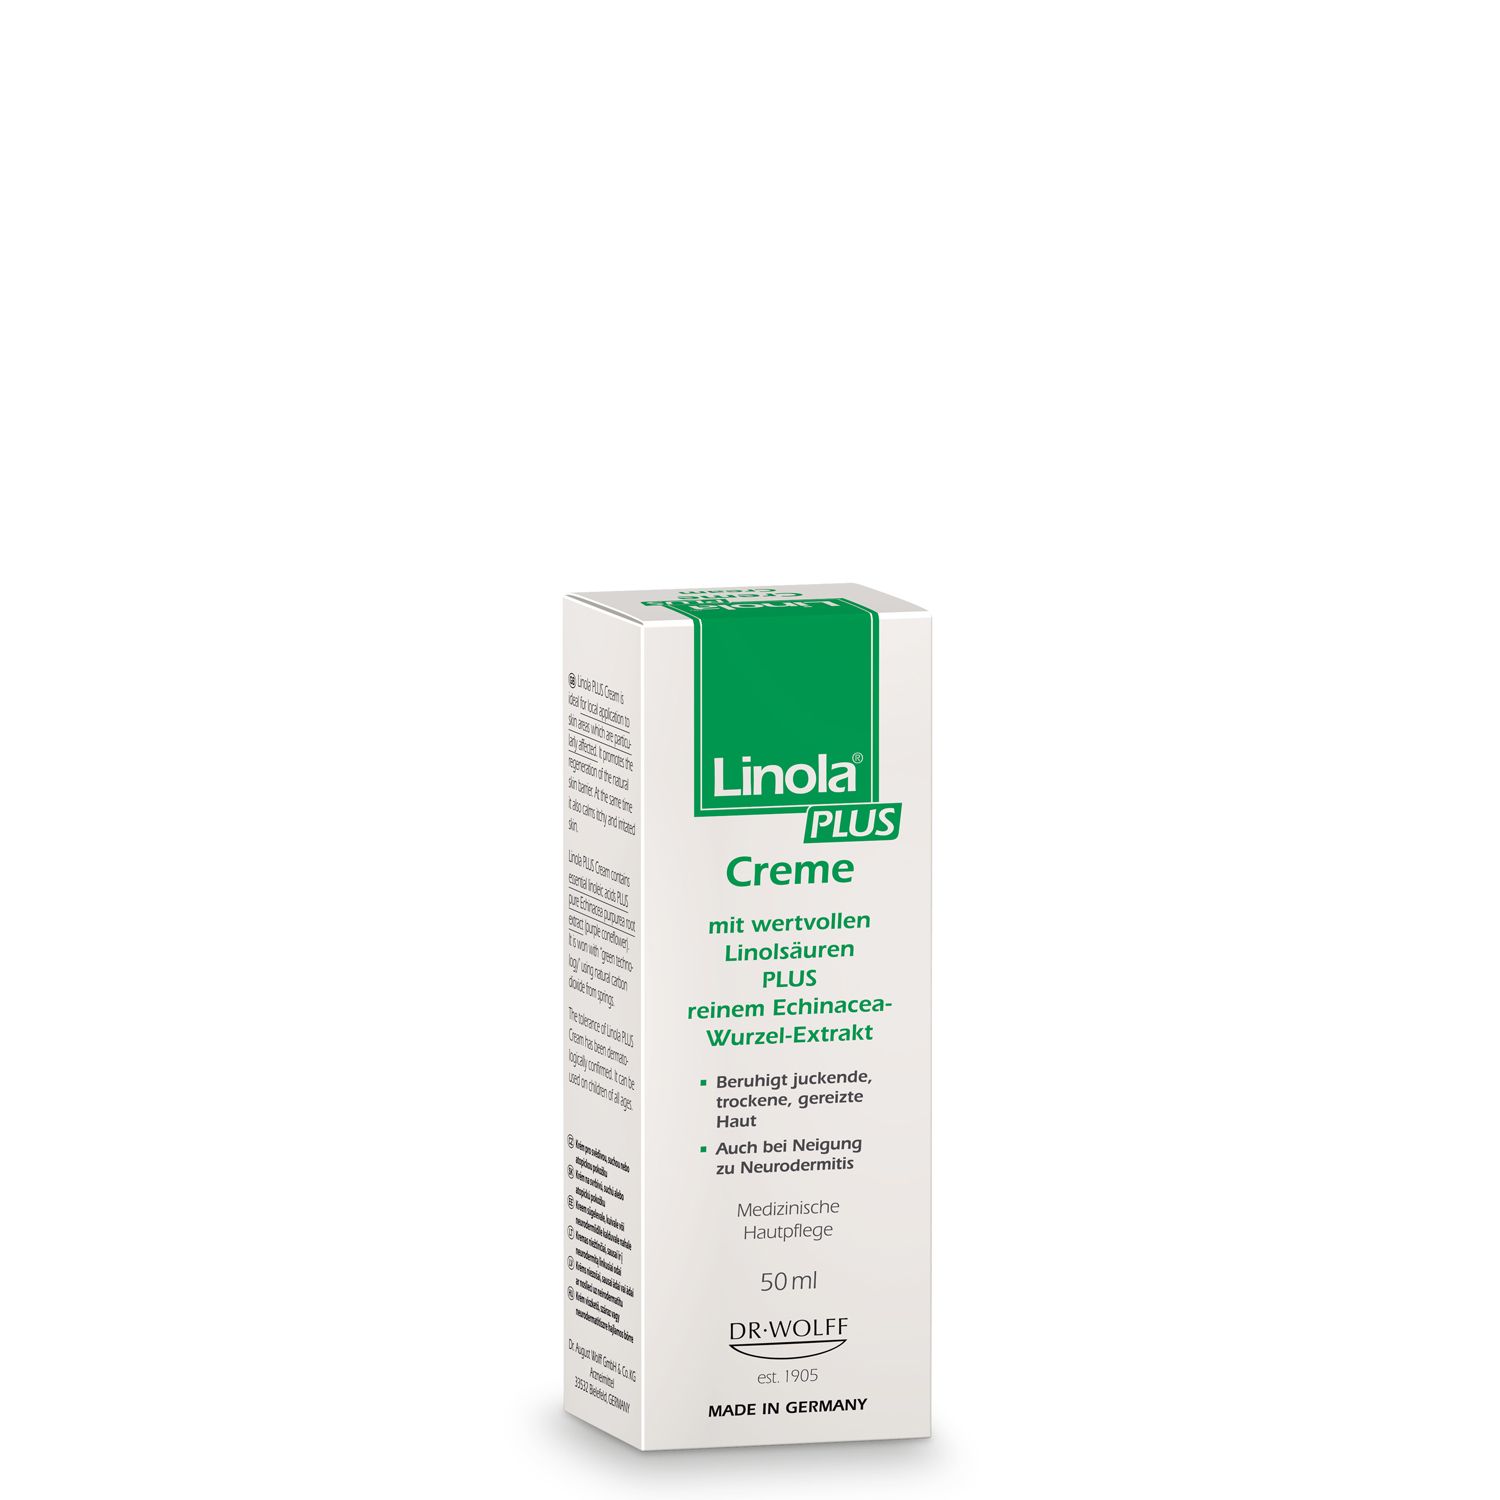 Linola PLUS Creme - Creme für juckende, trockene und irritierte Haut